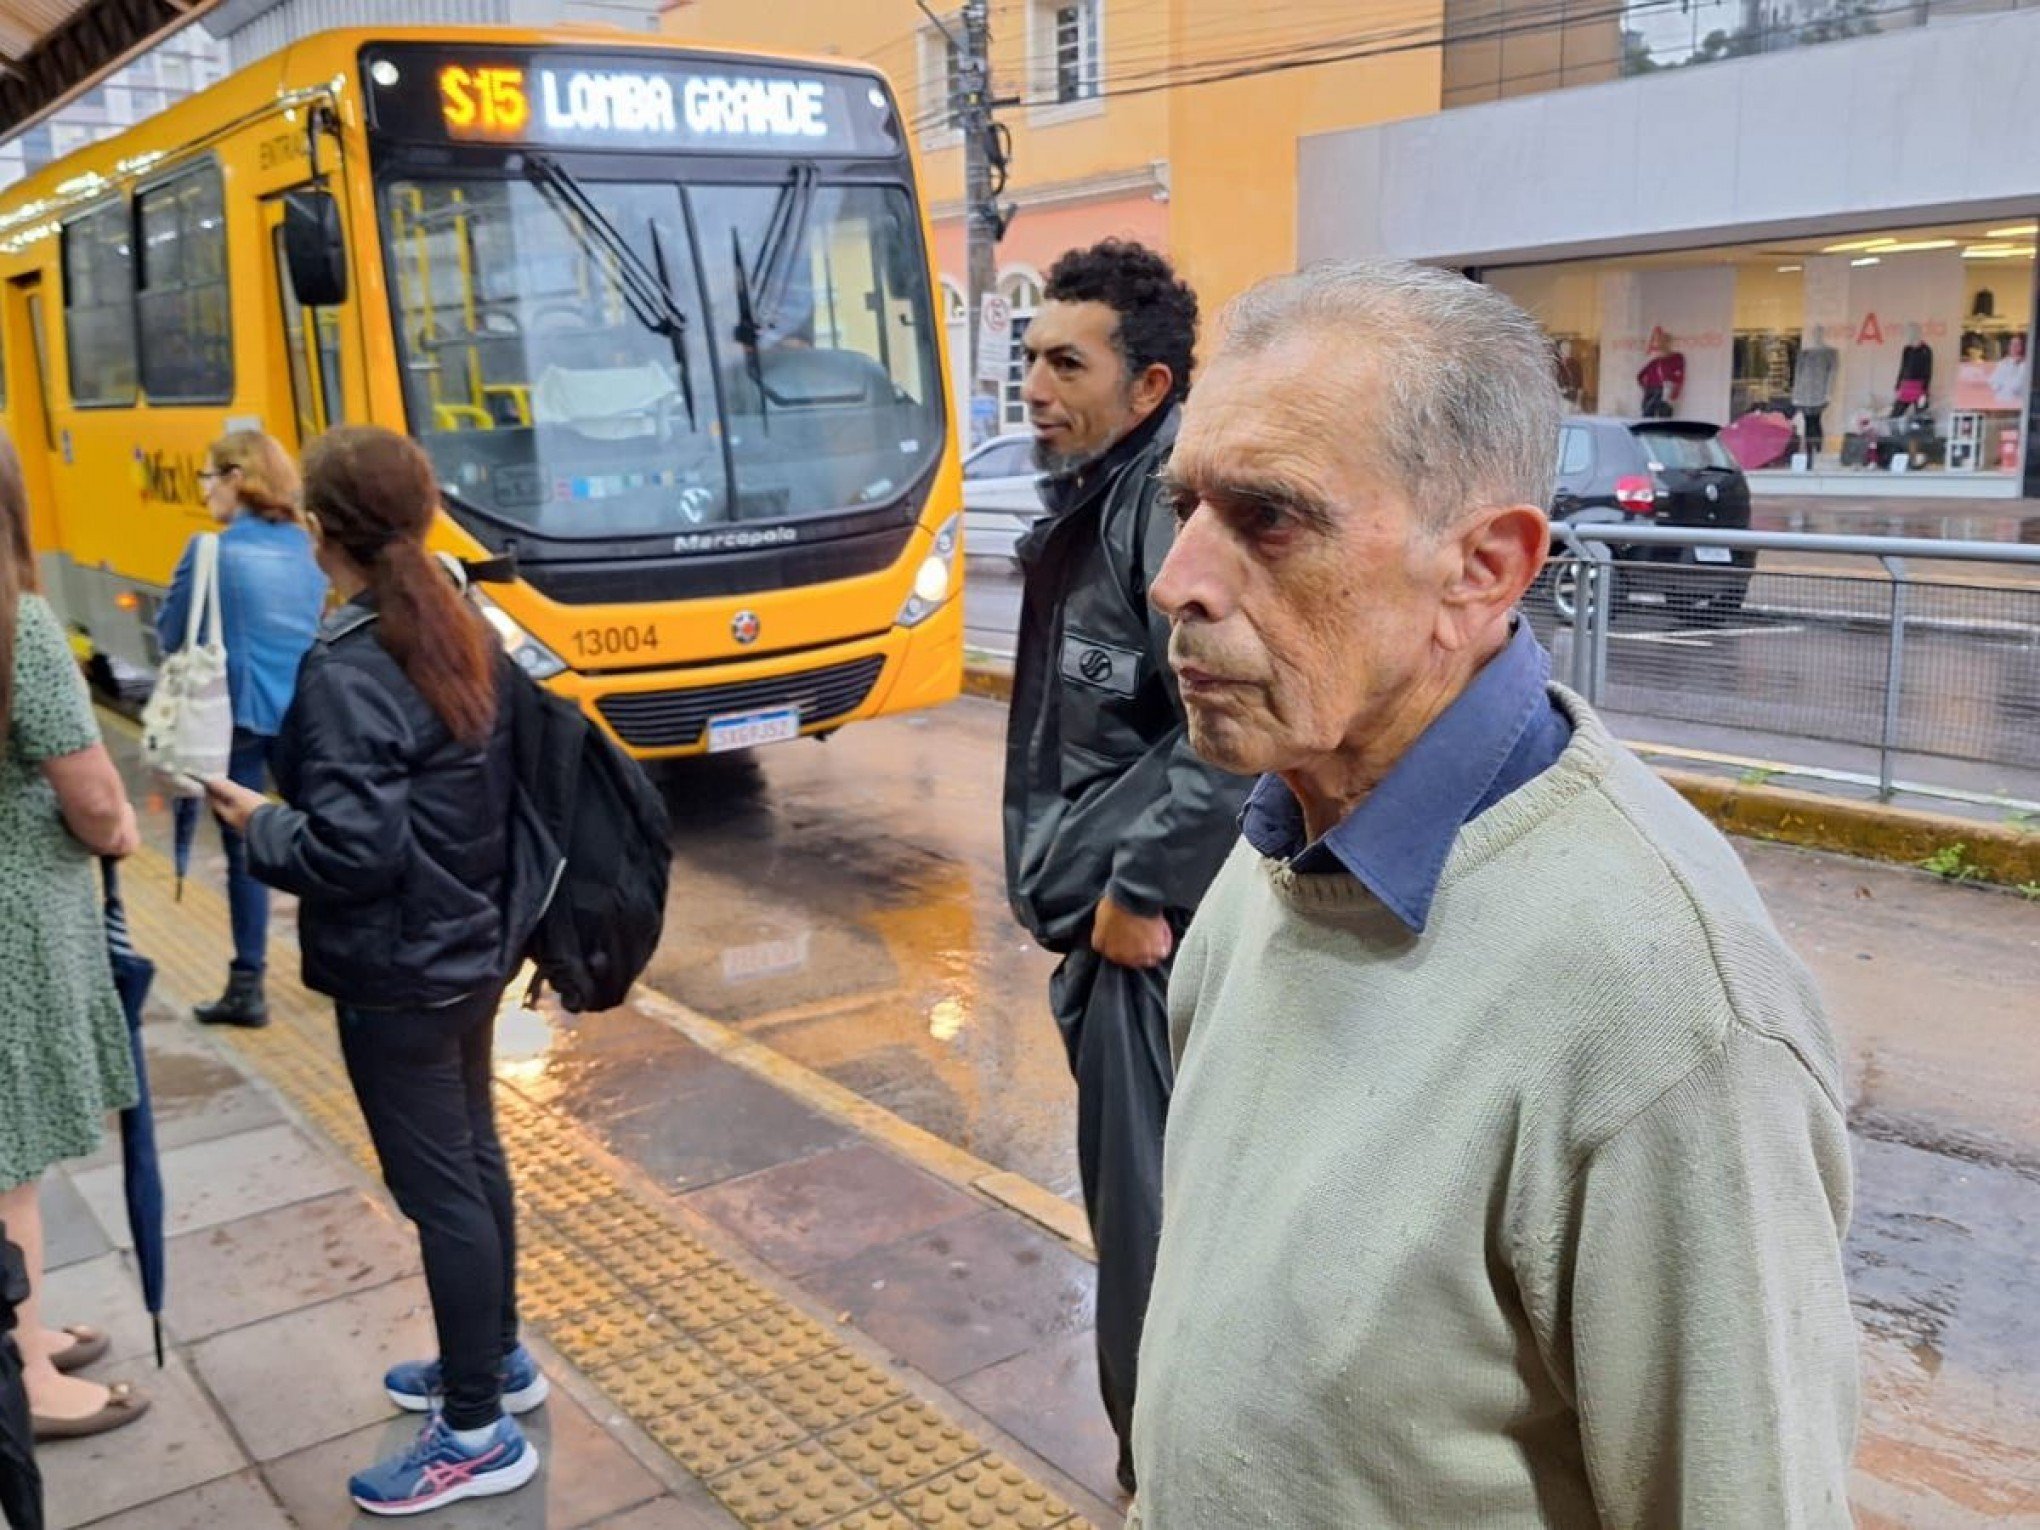 NOVO HAMBURGO: Moradores têm que andar a pé por falta de ônibus